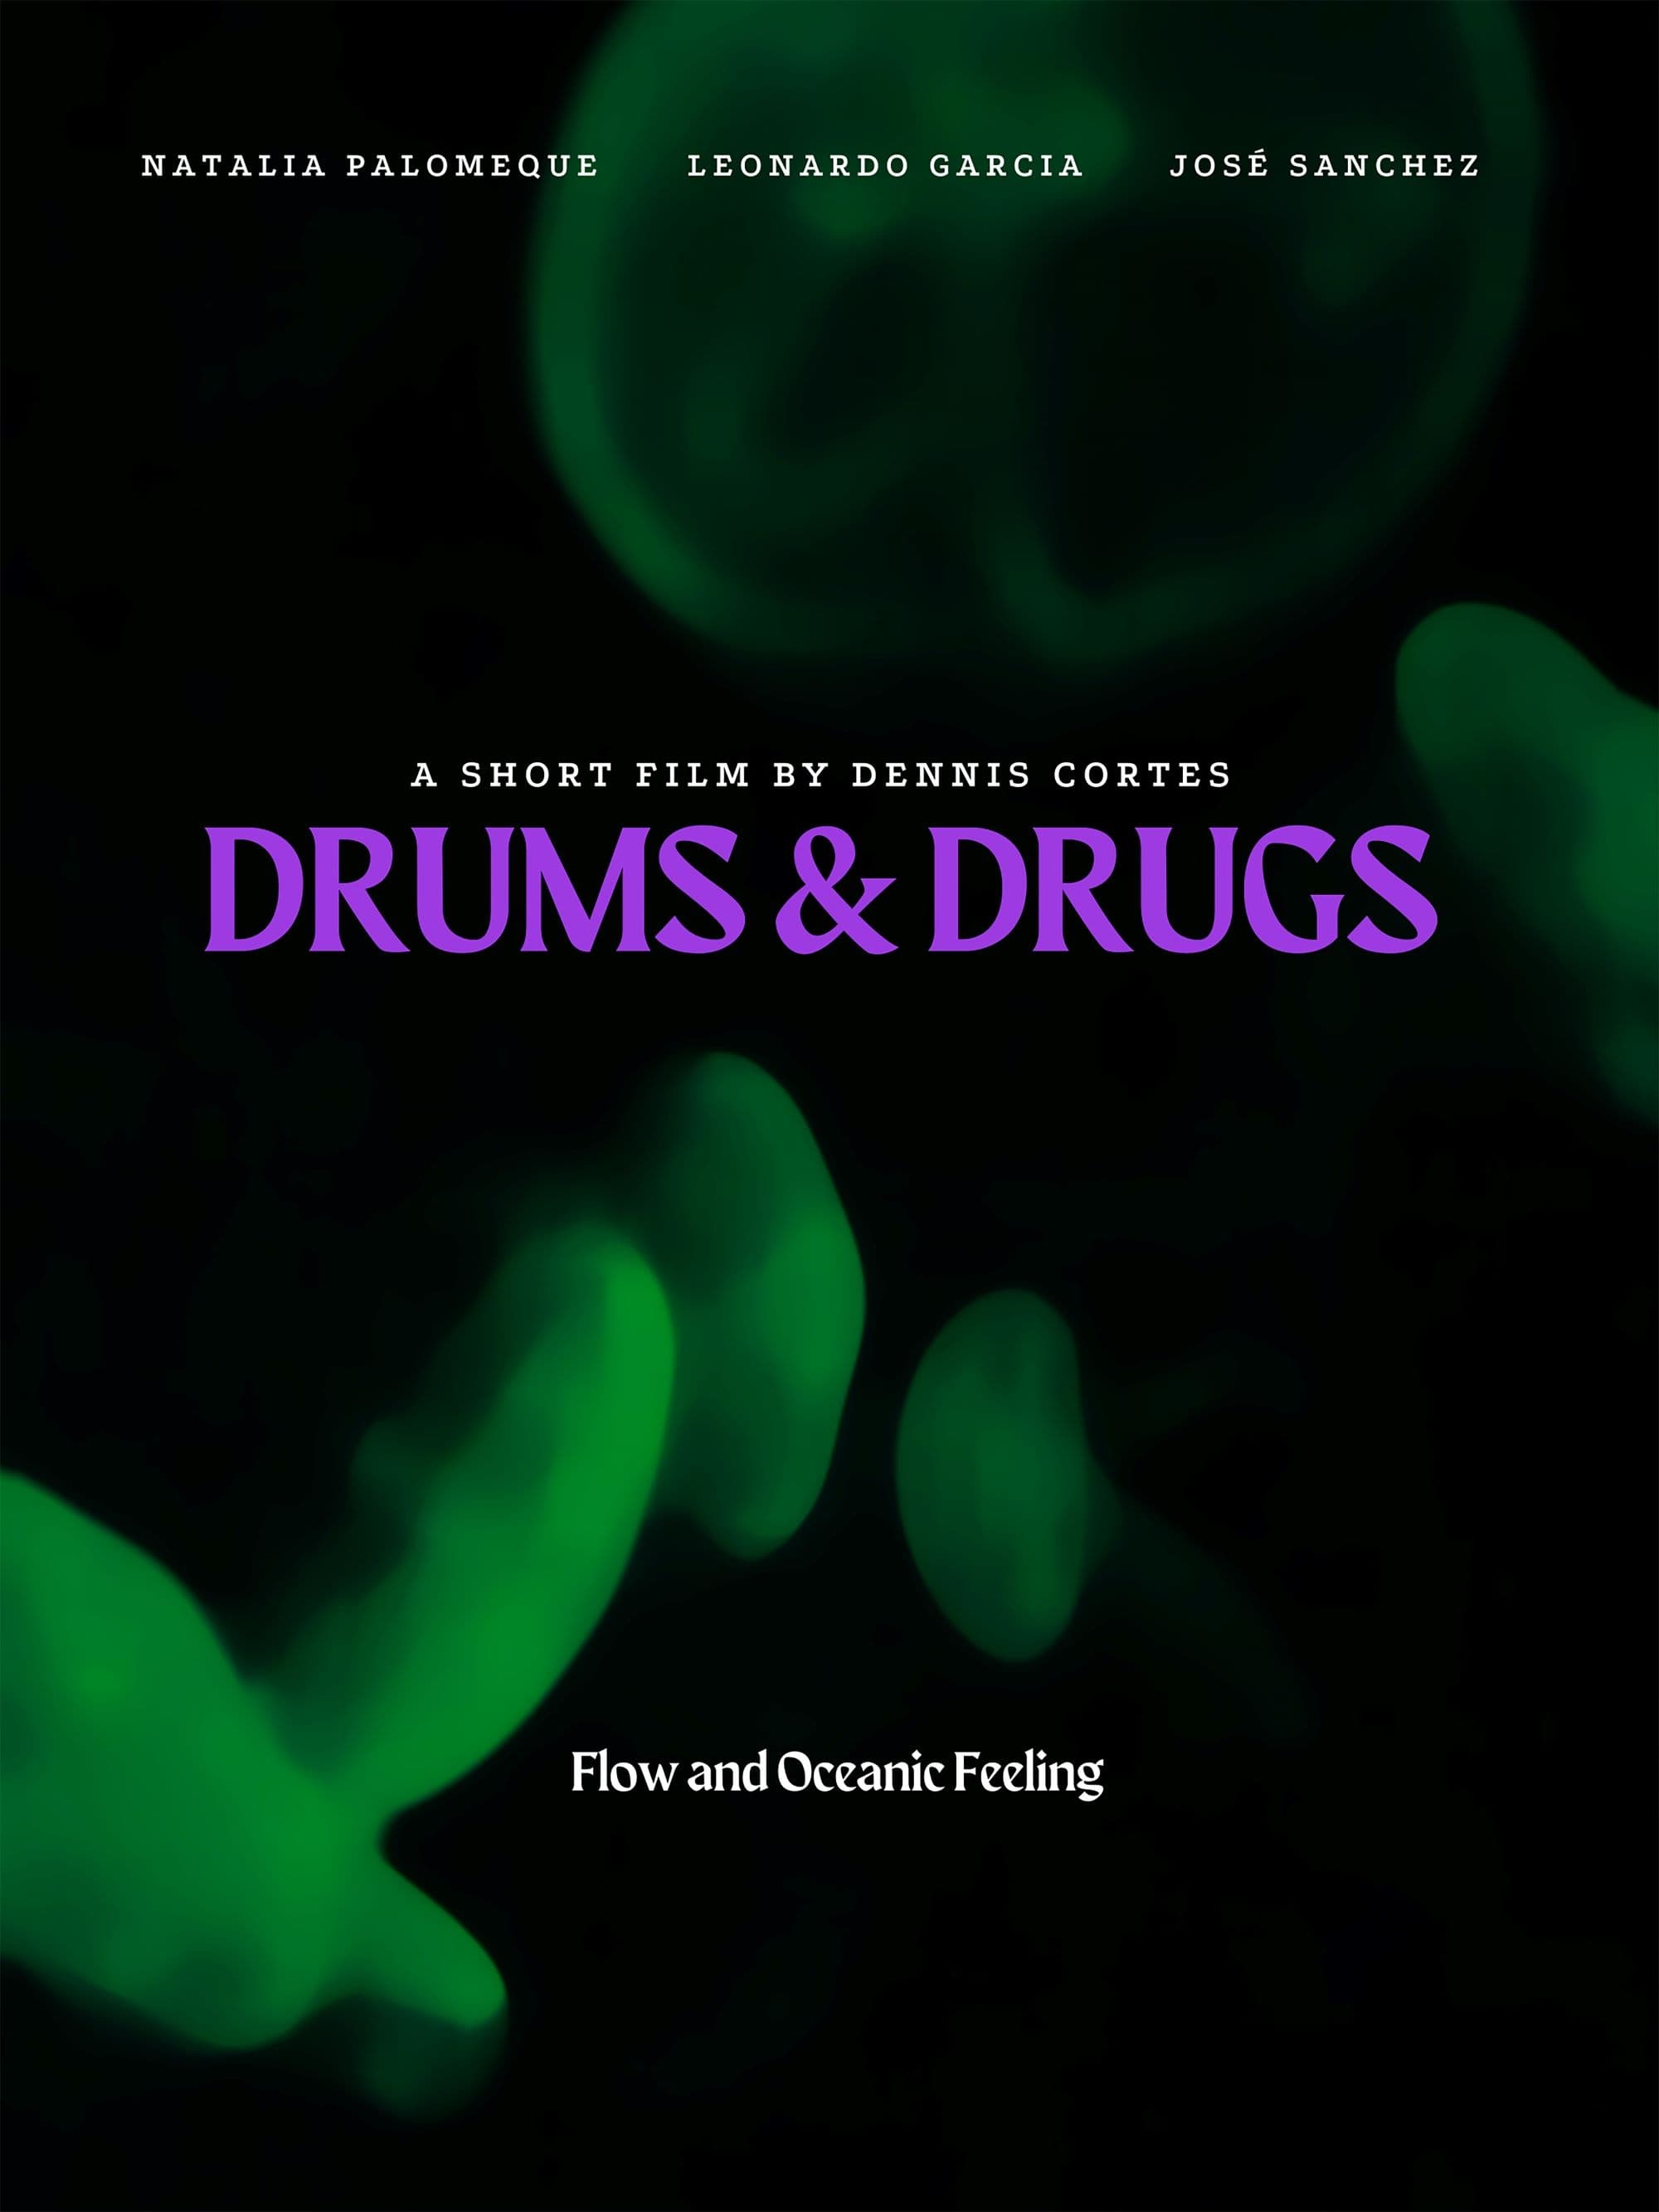 Drums & Drugs